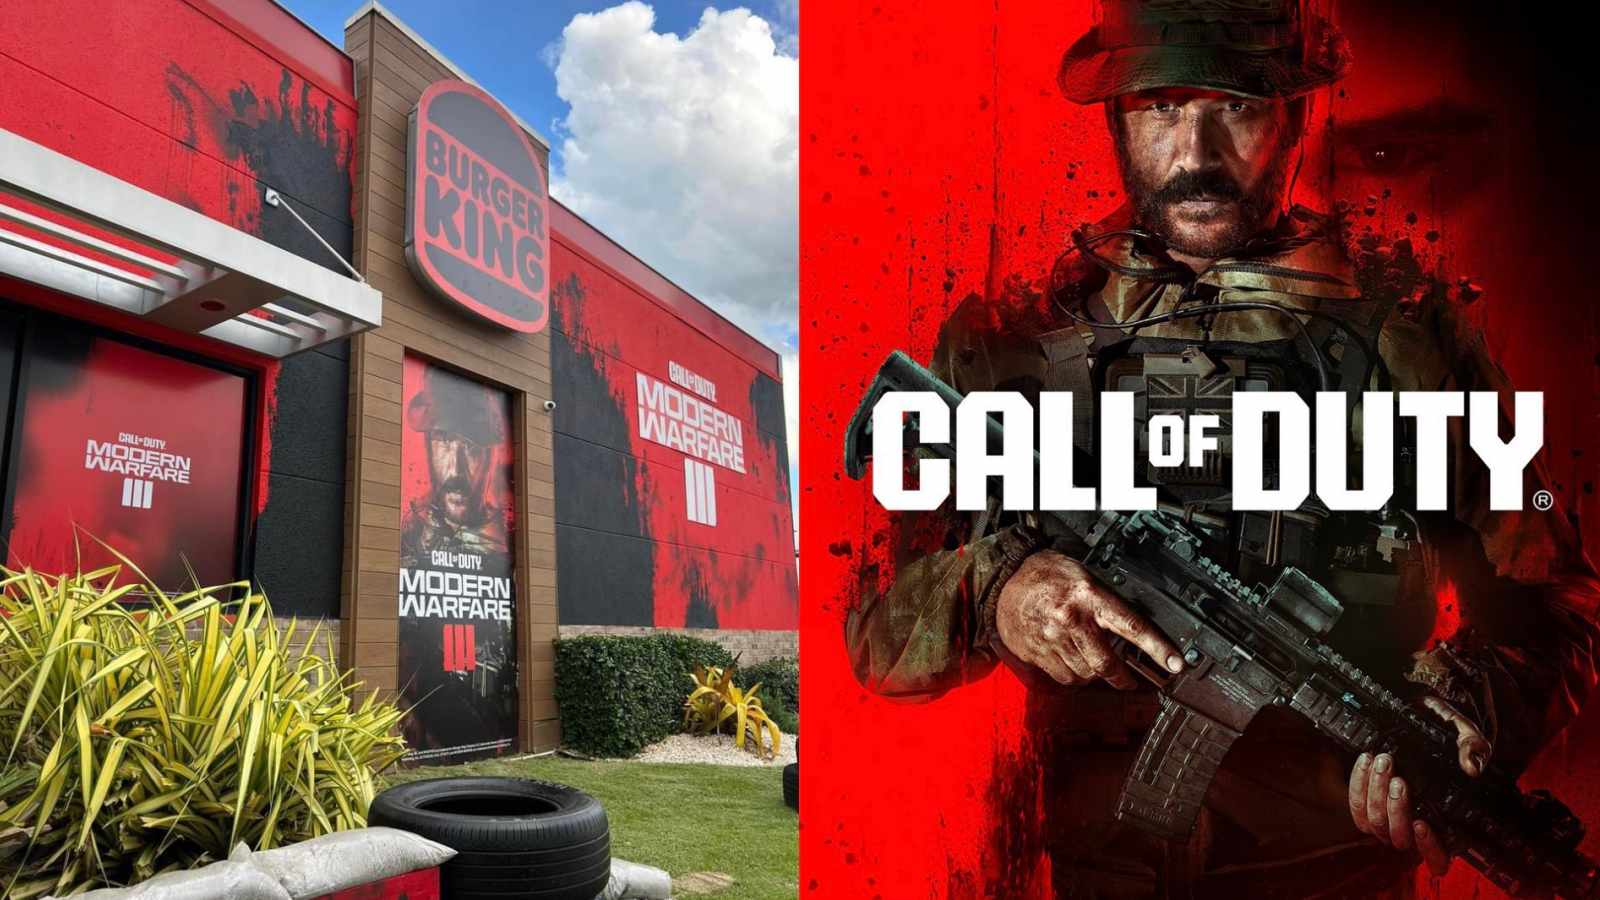 Burger King gets massive Modern Warfare 3 makeover to celebrate